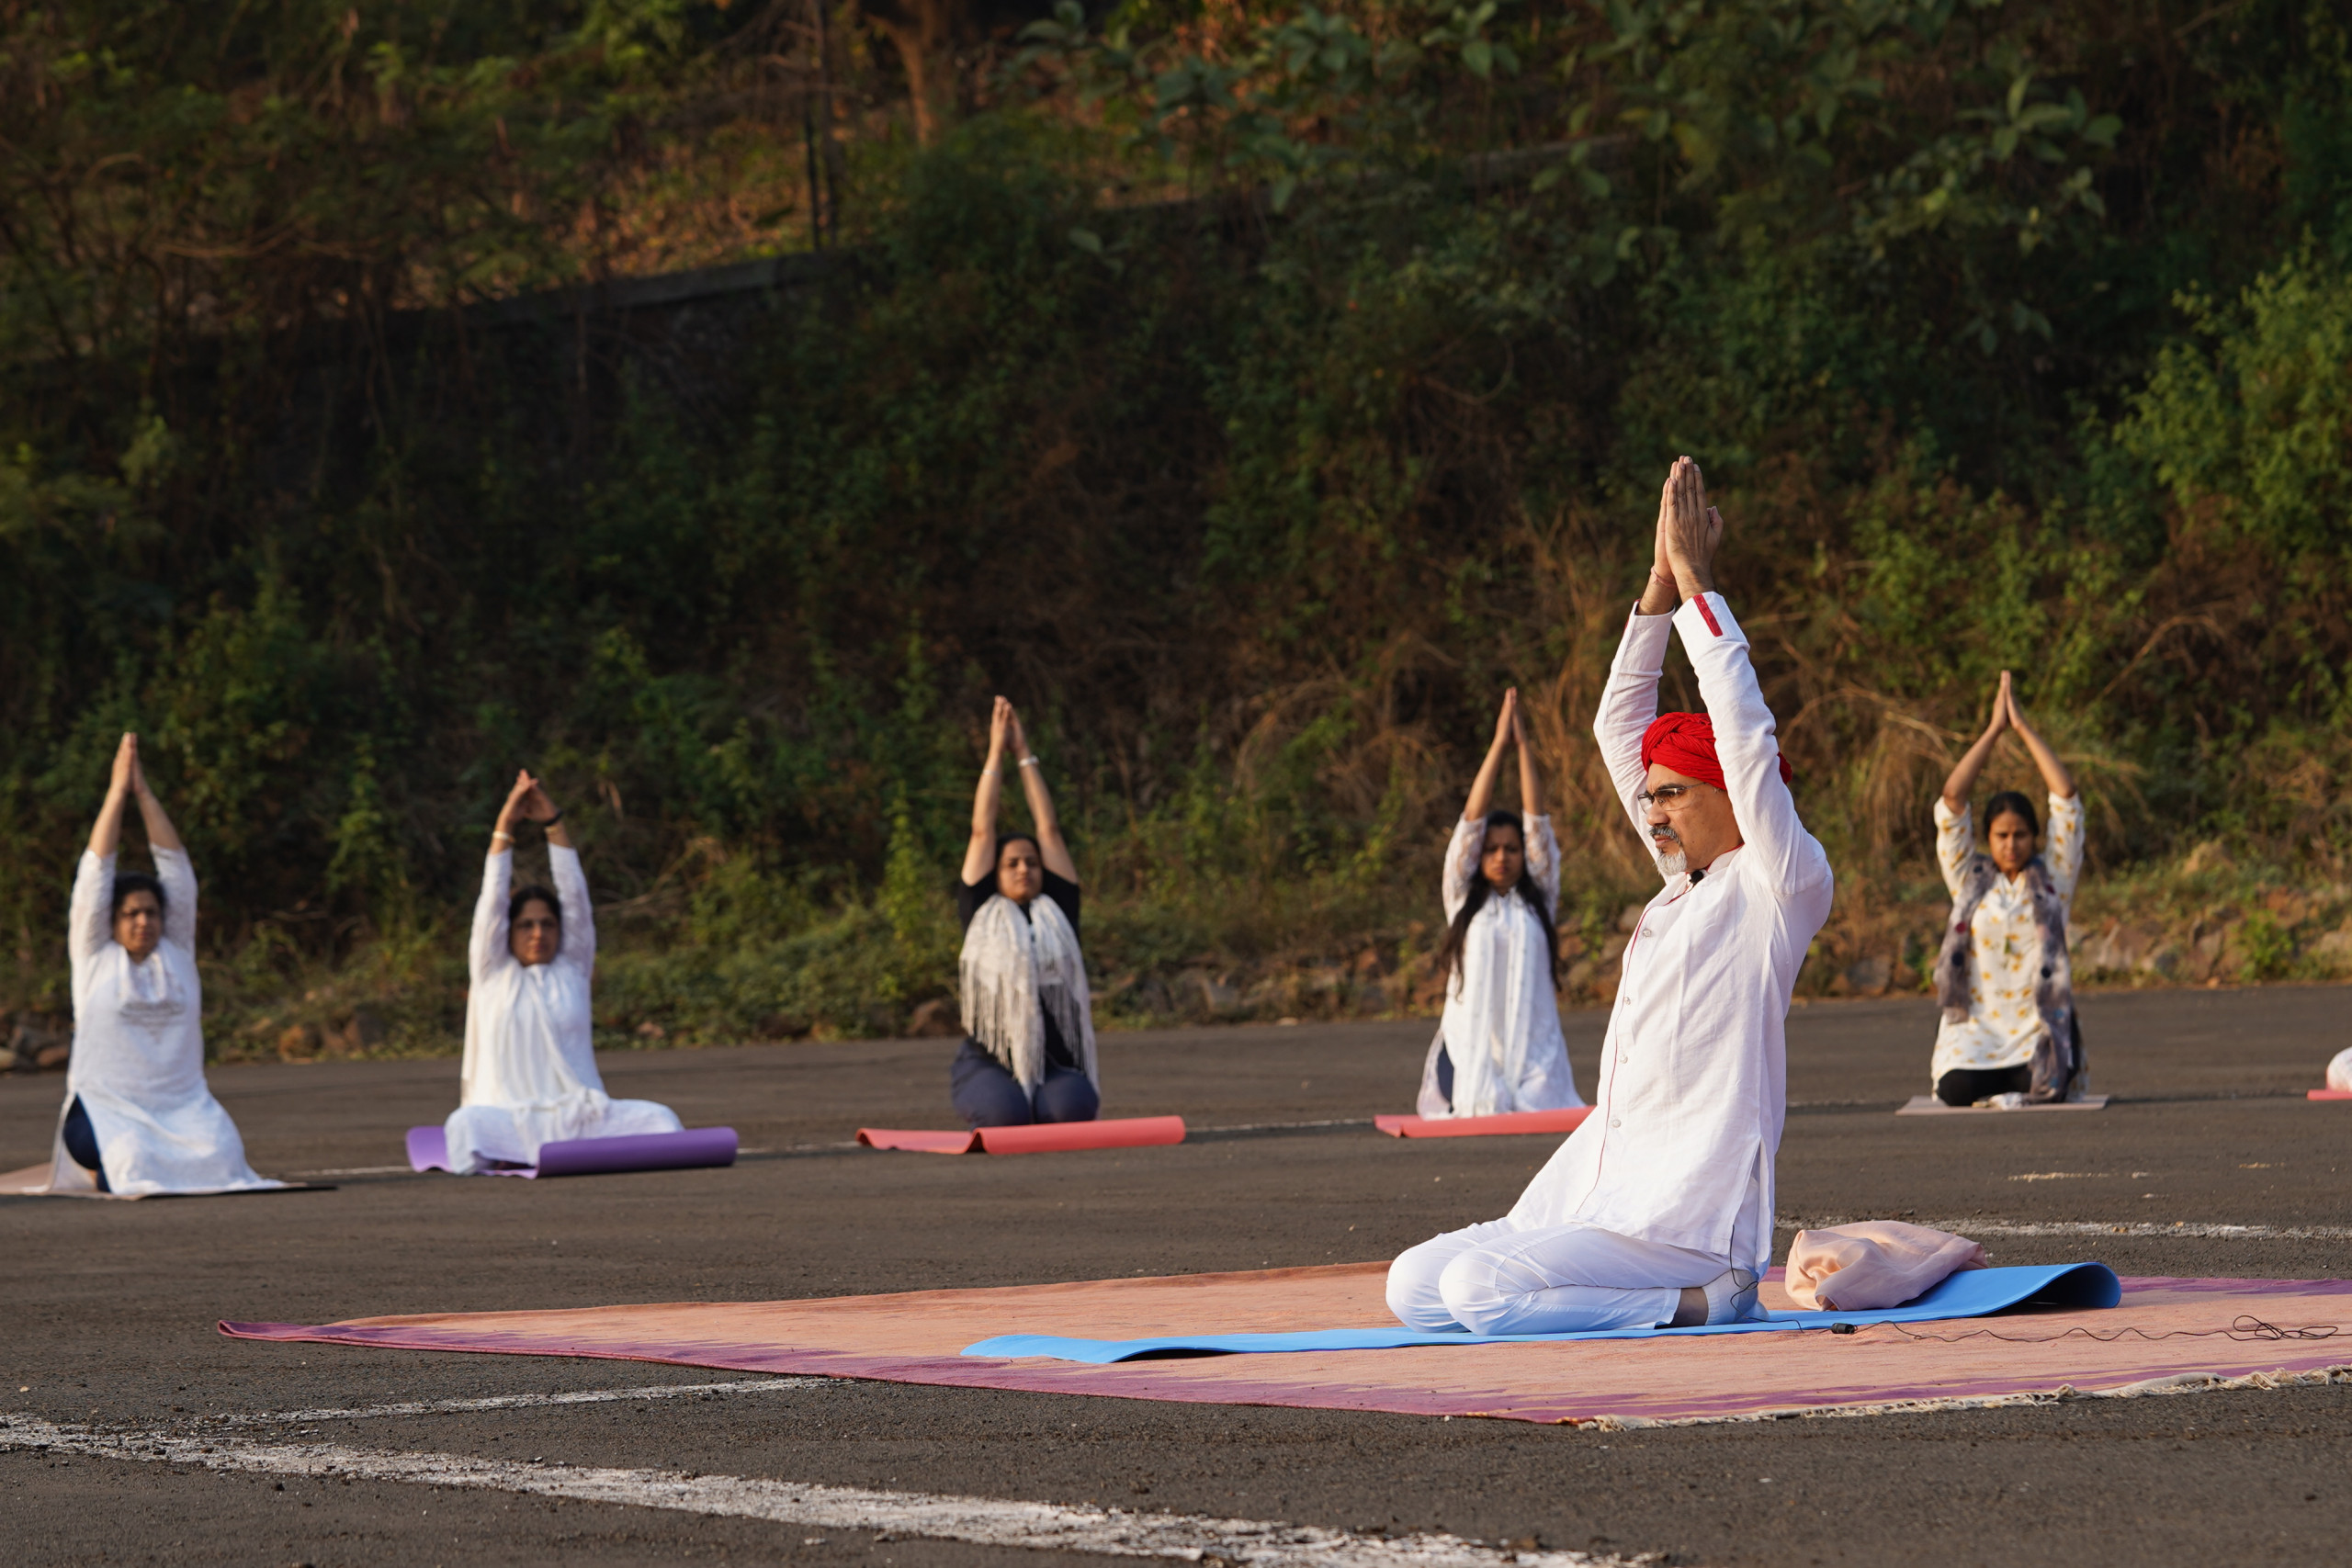 Vibhushri Sun meditation - mahashivratri Bodhmarga Vitthal kriya yoga